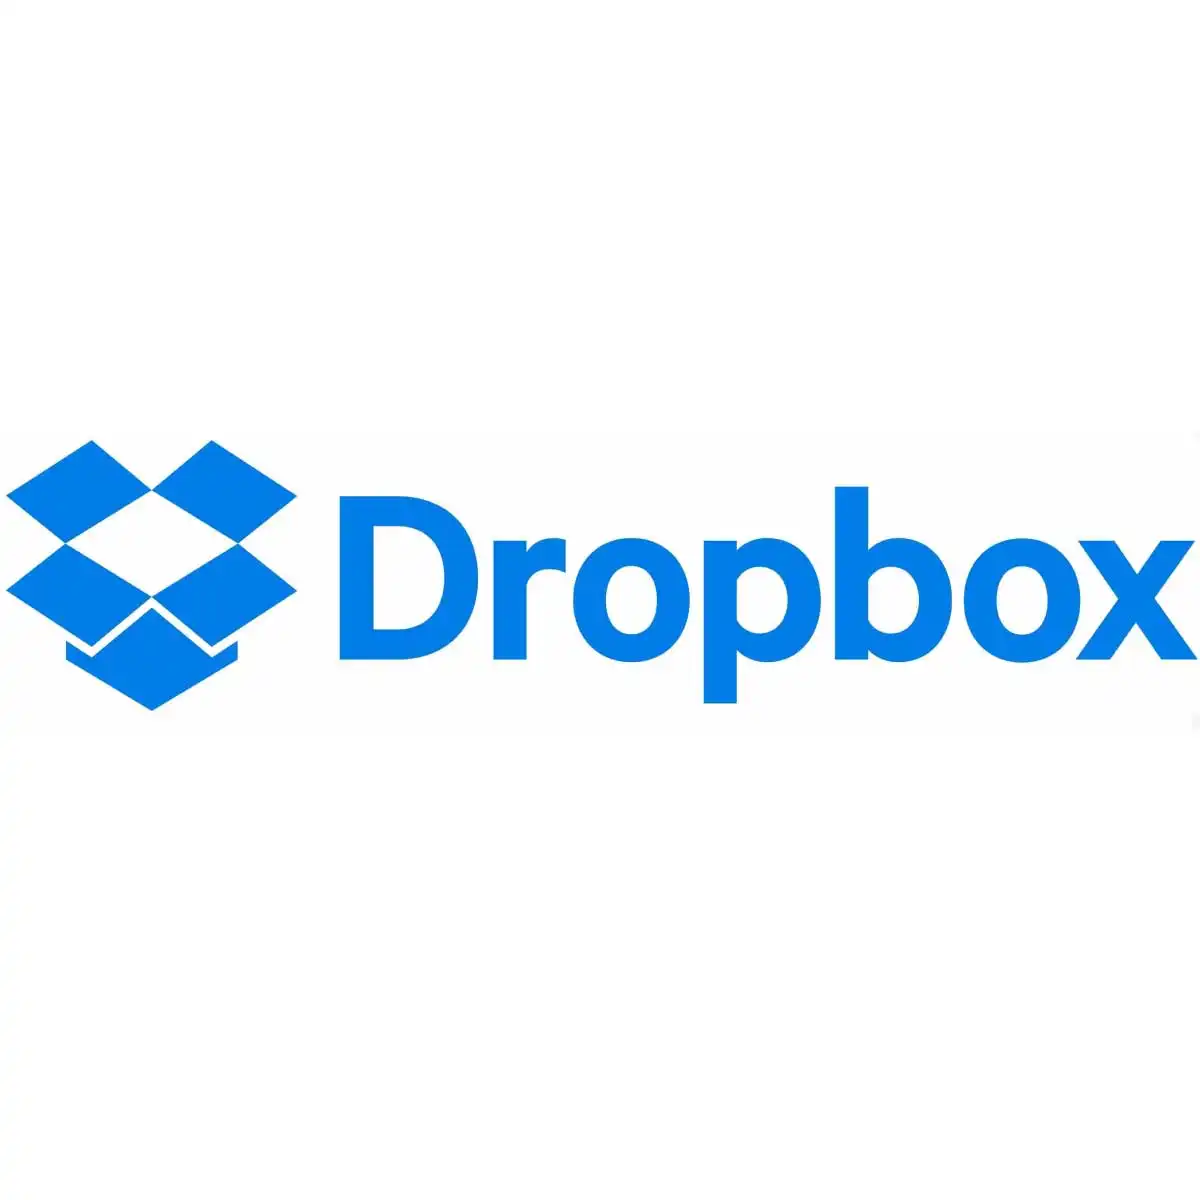 En İyi Bilgisayar Programları Dropbox